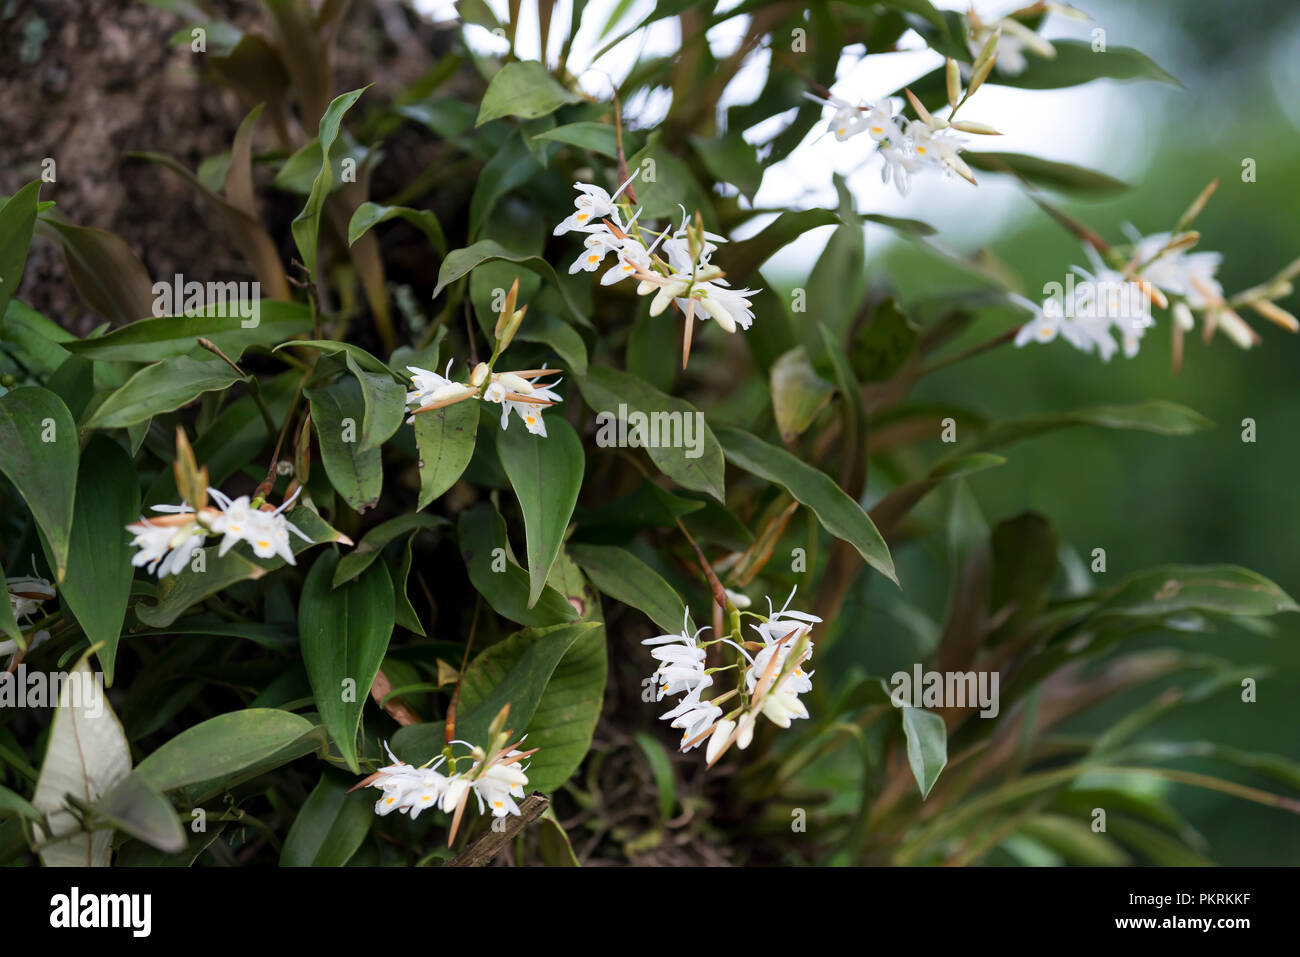 Dendrobium infundibulum Lindl, bianco rare orchidee selvatiche nella foresta pluviale, Vietnam Foto Stock